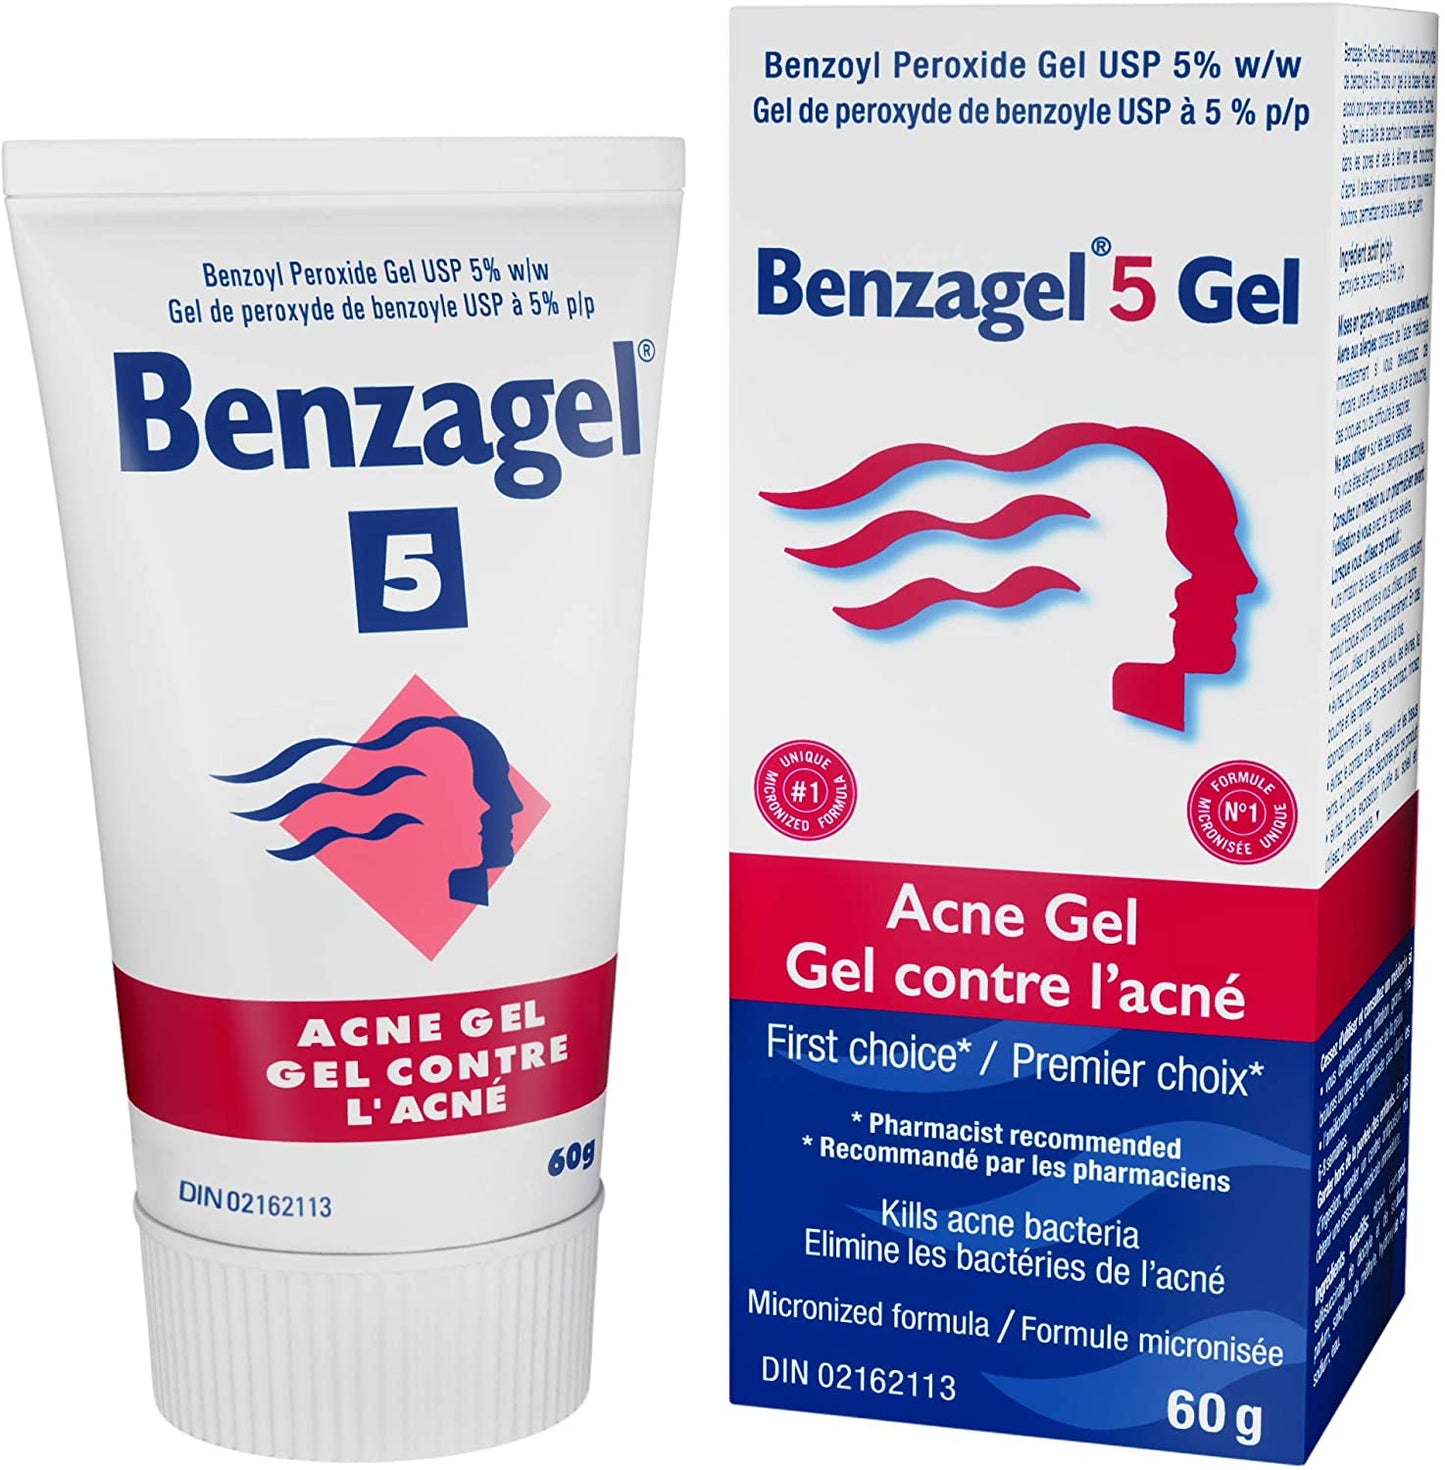 Benzagel Acne Gel 5%